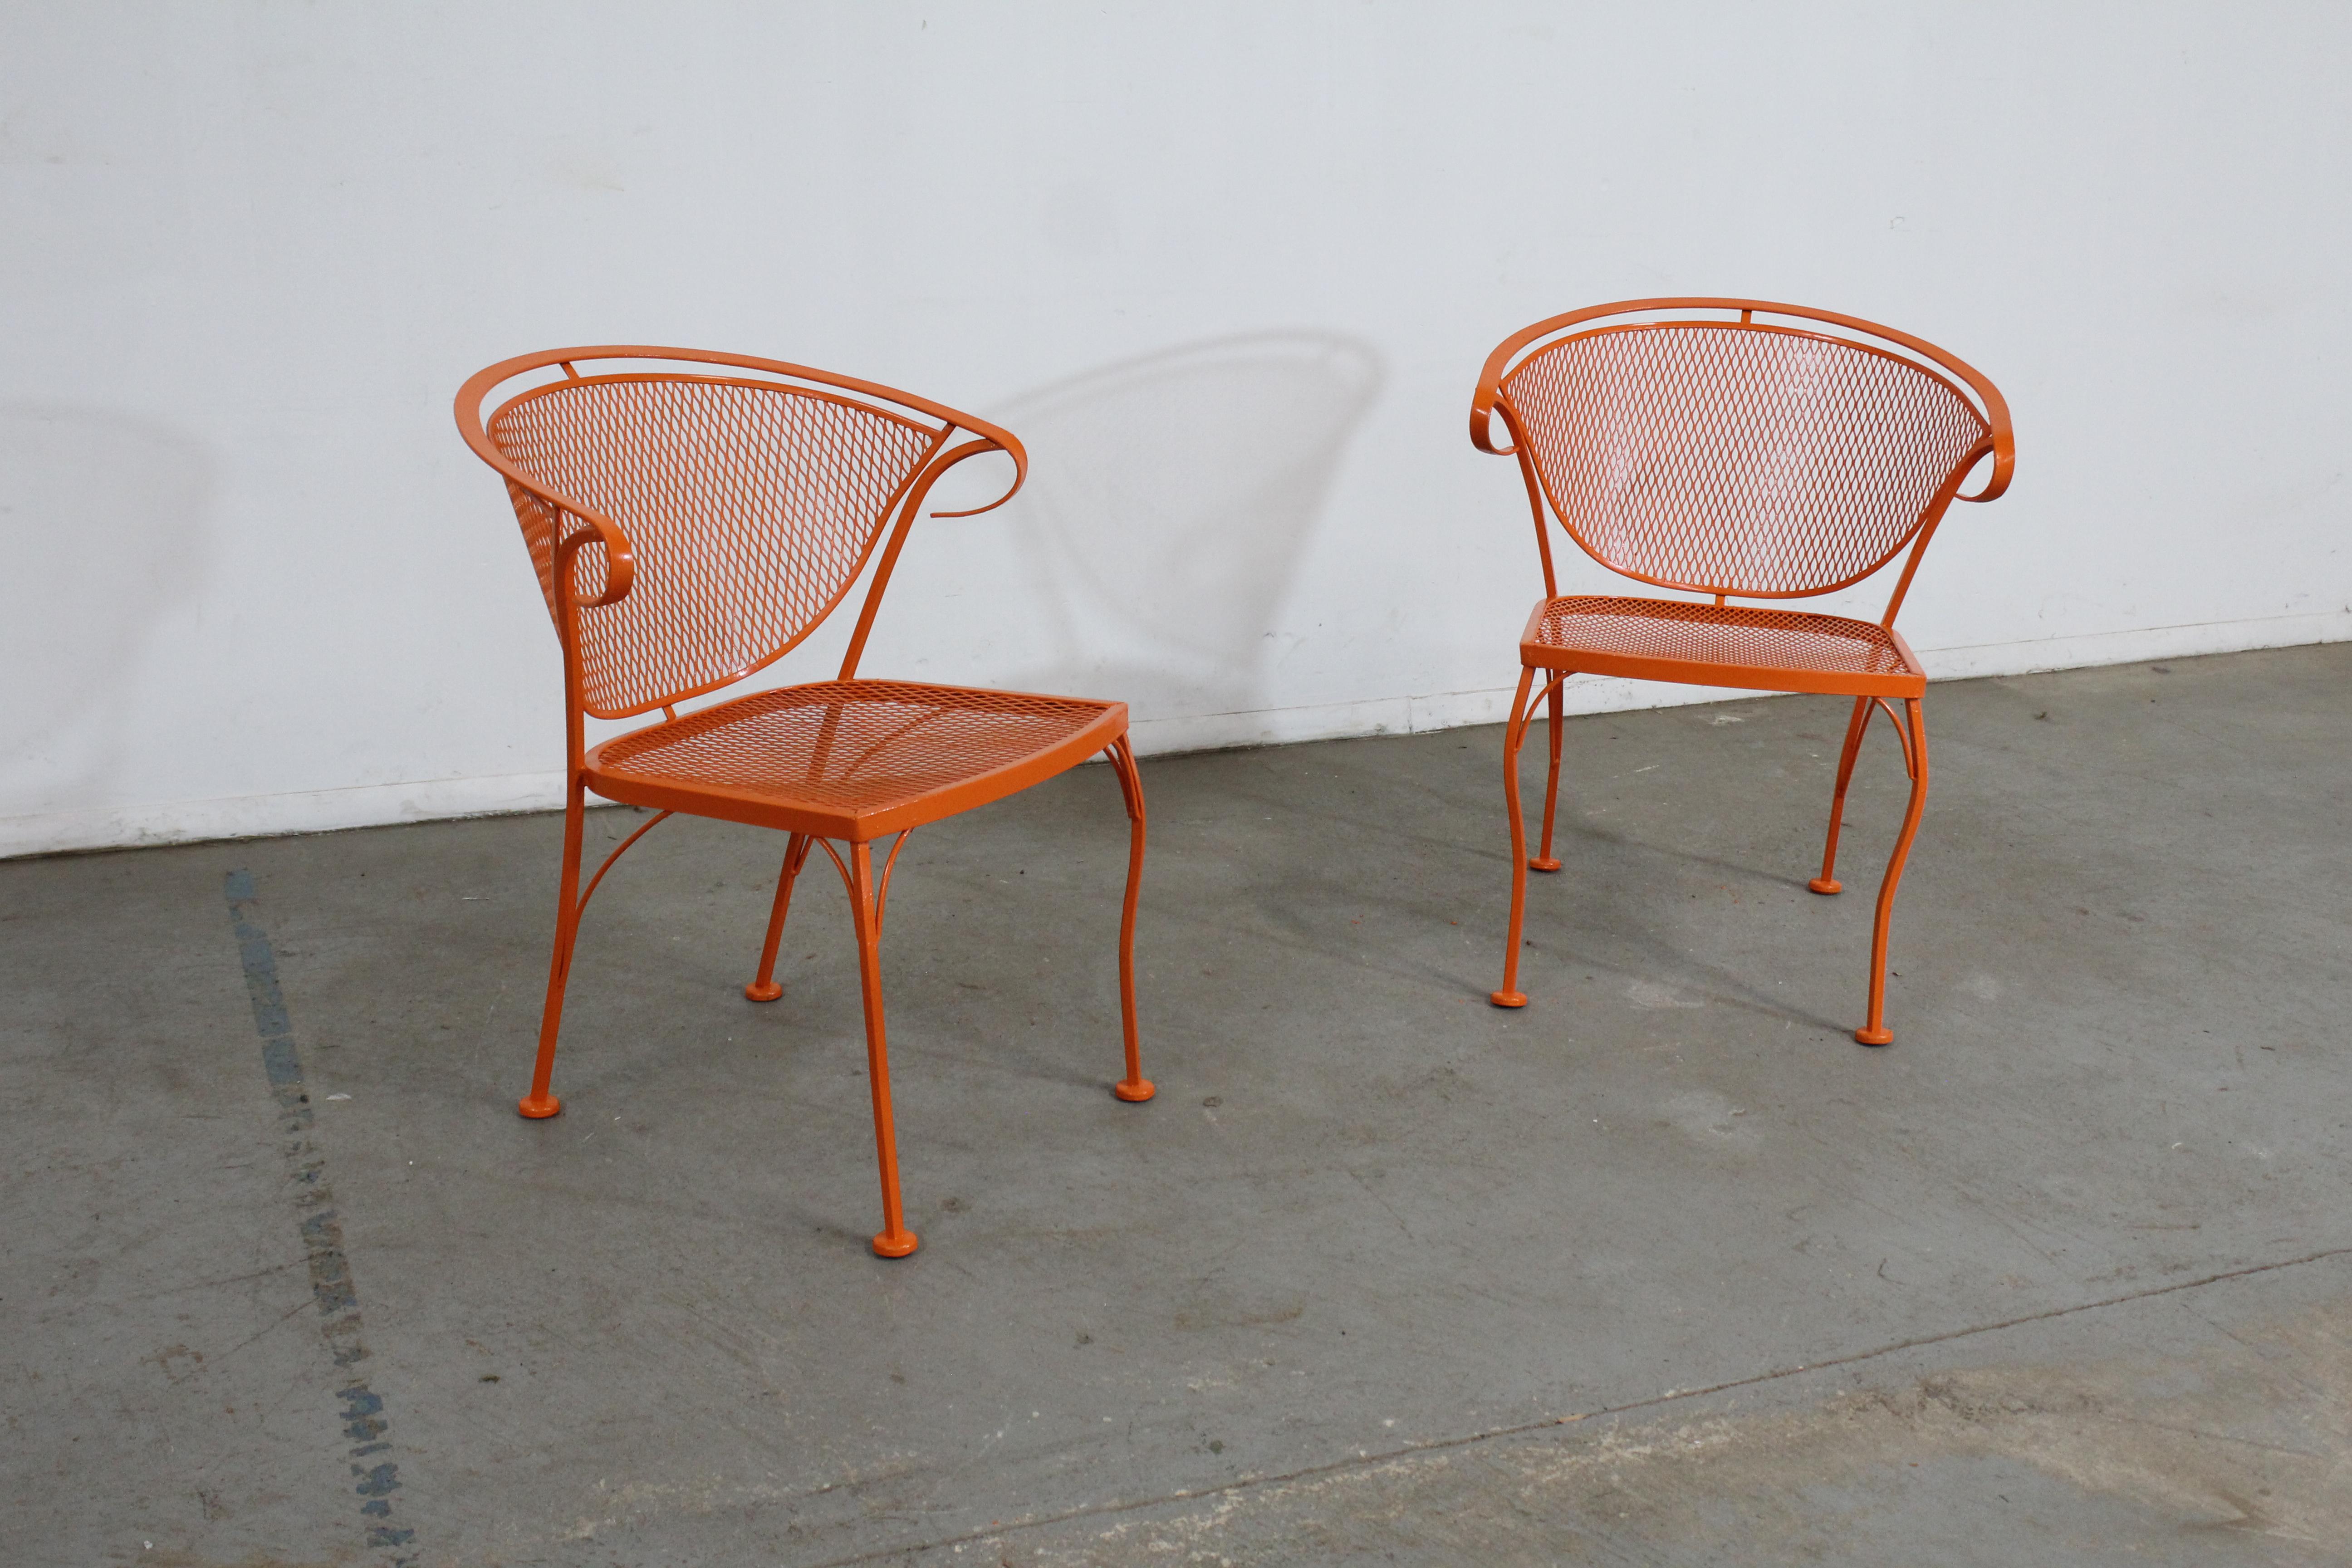 Paar Mid-Century Modern Atomic Orange Salterini Style Outdoor Metall gebogenen Rücken Stühle Set B

Angeboten wird ein Paar von Mid-Century Modern Atomic orange Outdoor Metall gebogene Rückenlehne Stühle, circa 1968. Diese Stühle wurden in einem